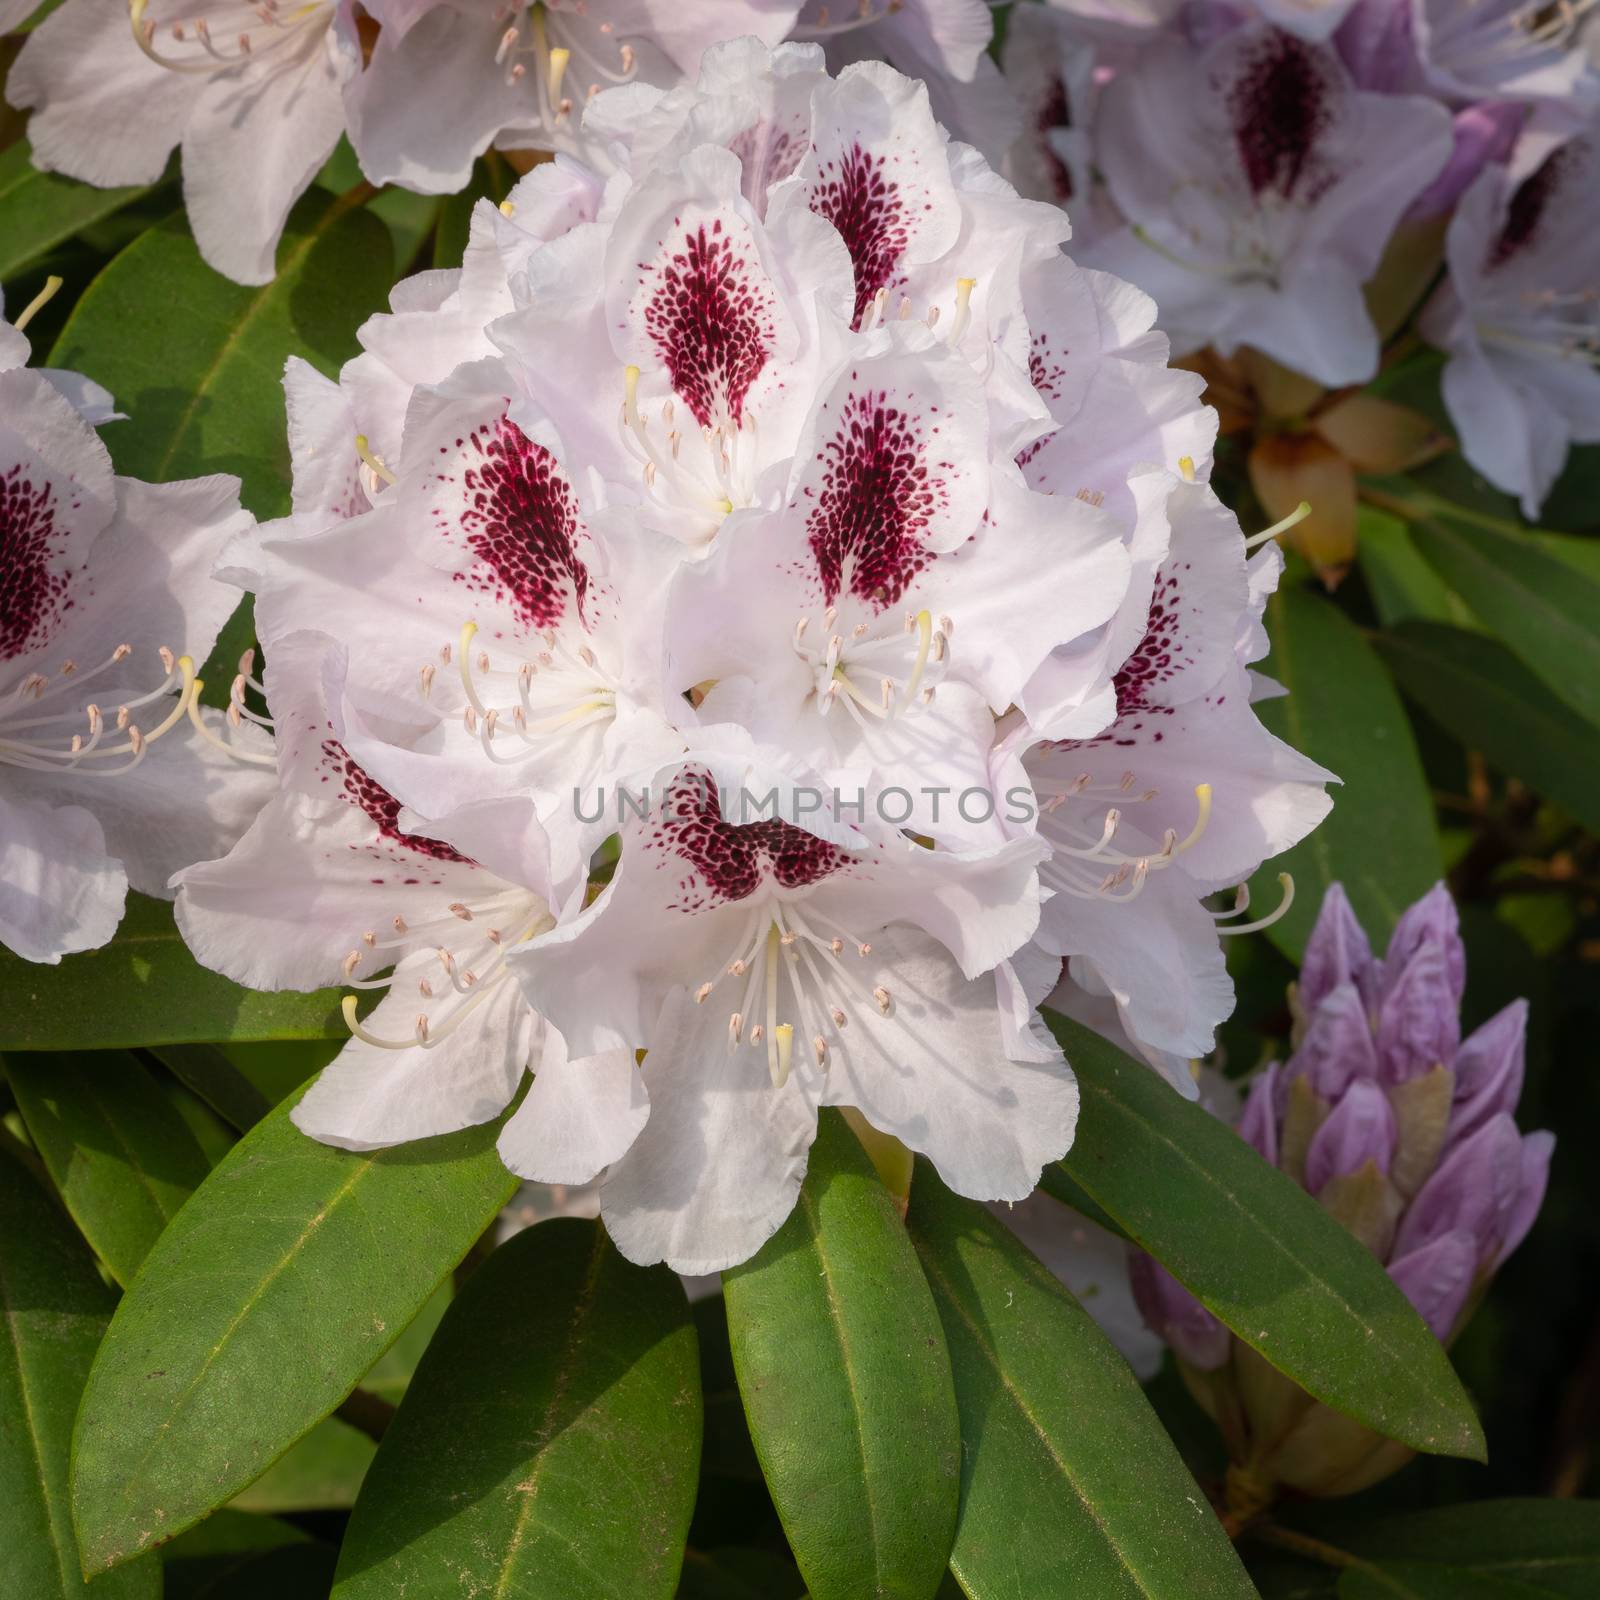 Rhododendron Hybrid Calsap, Rhododendron hybrid by alfotokunst